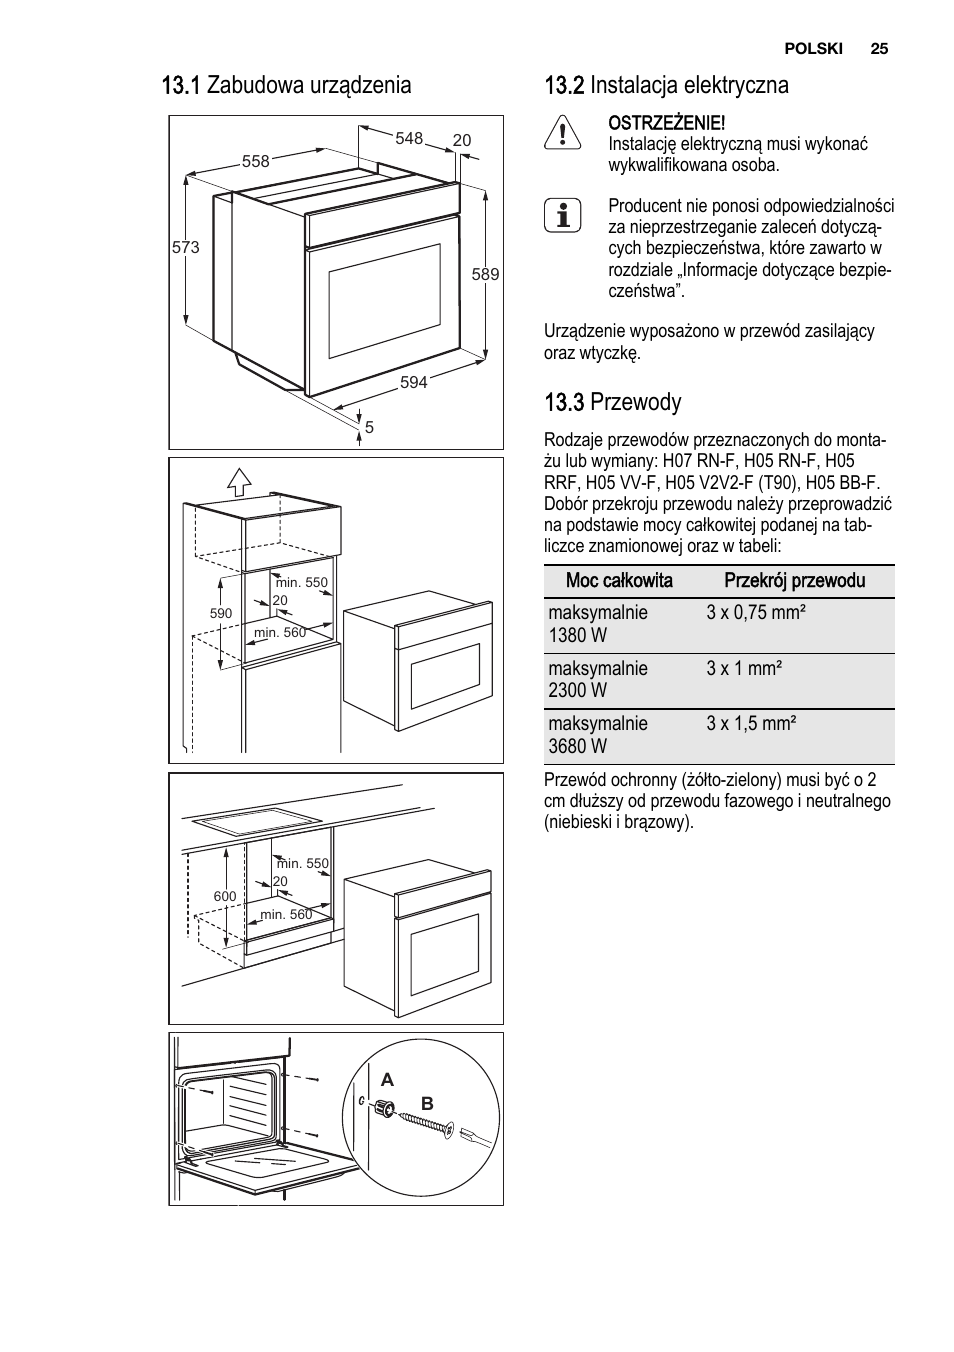 electrolux духовой шкаф инструкция по применению